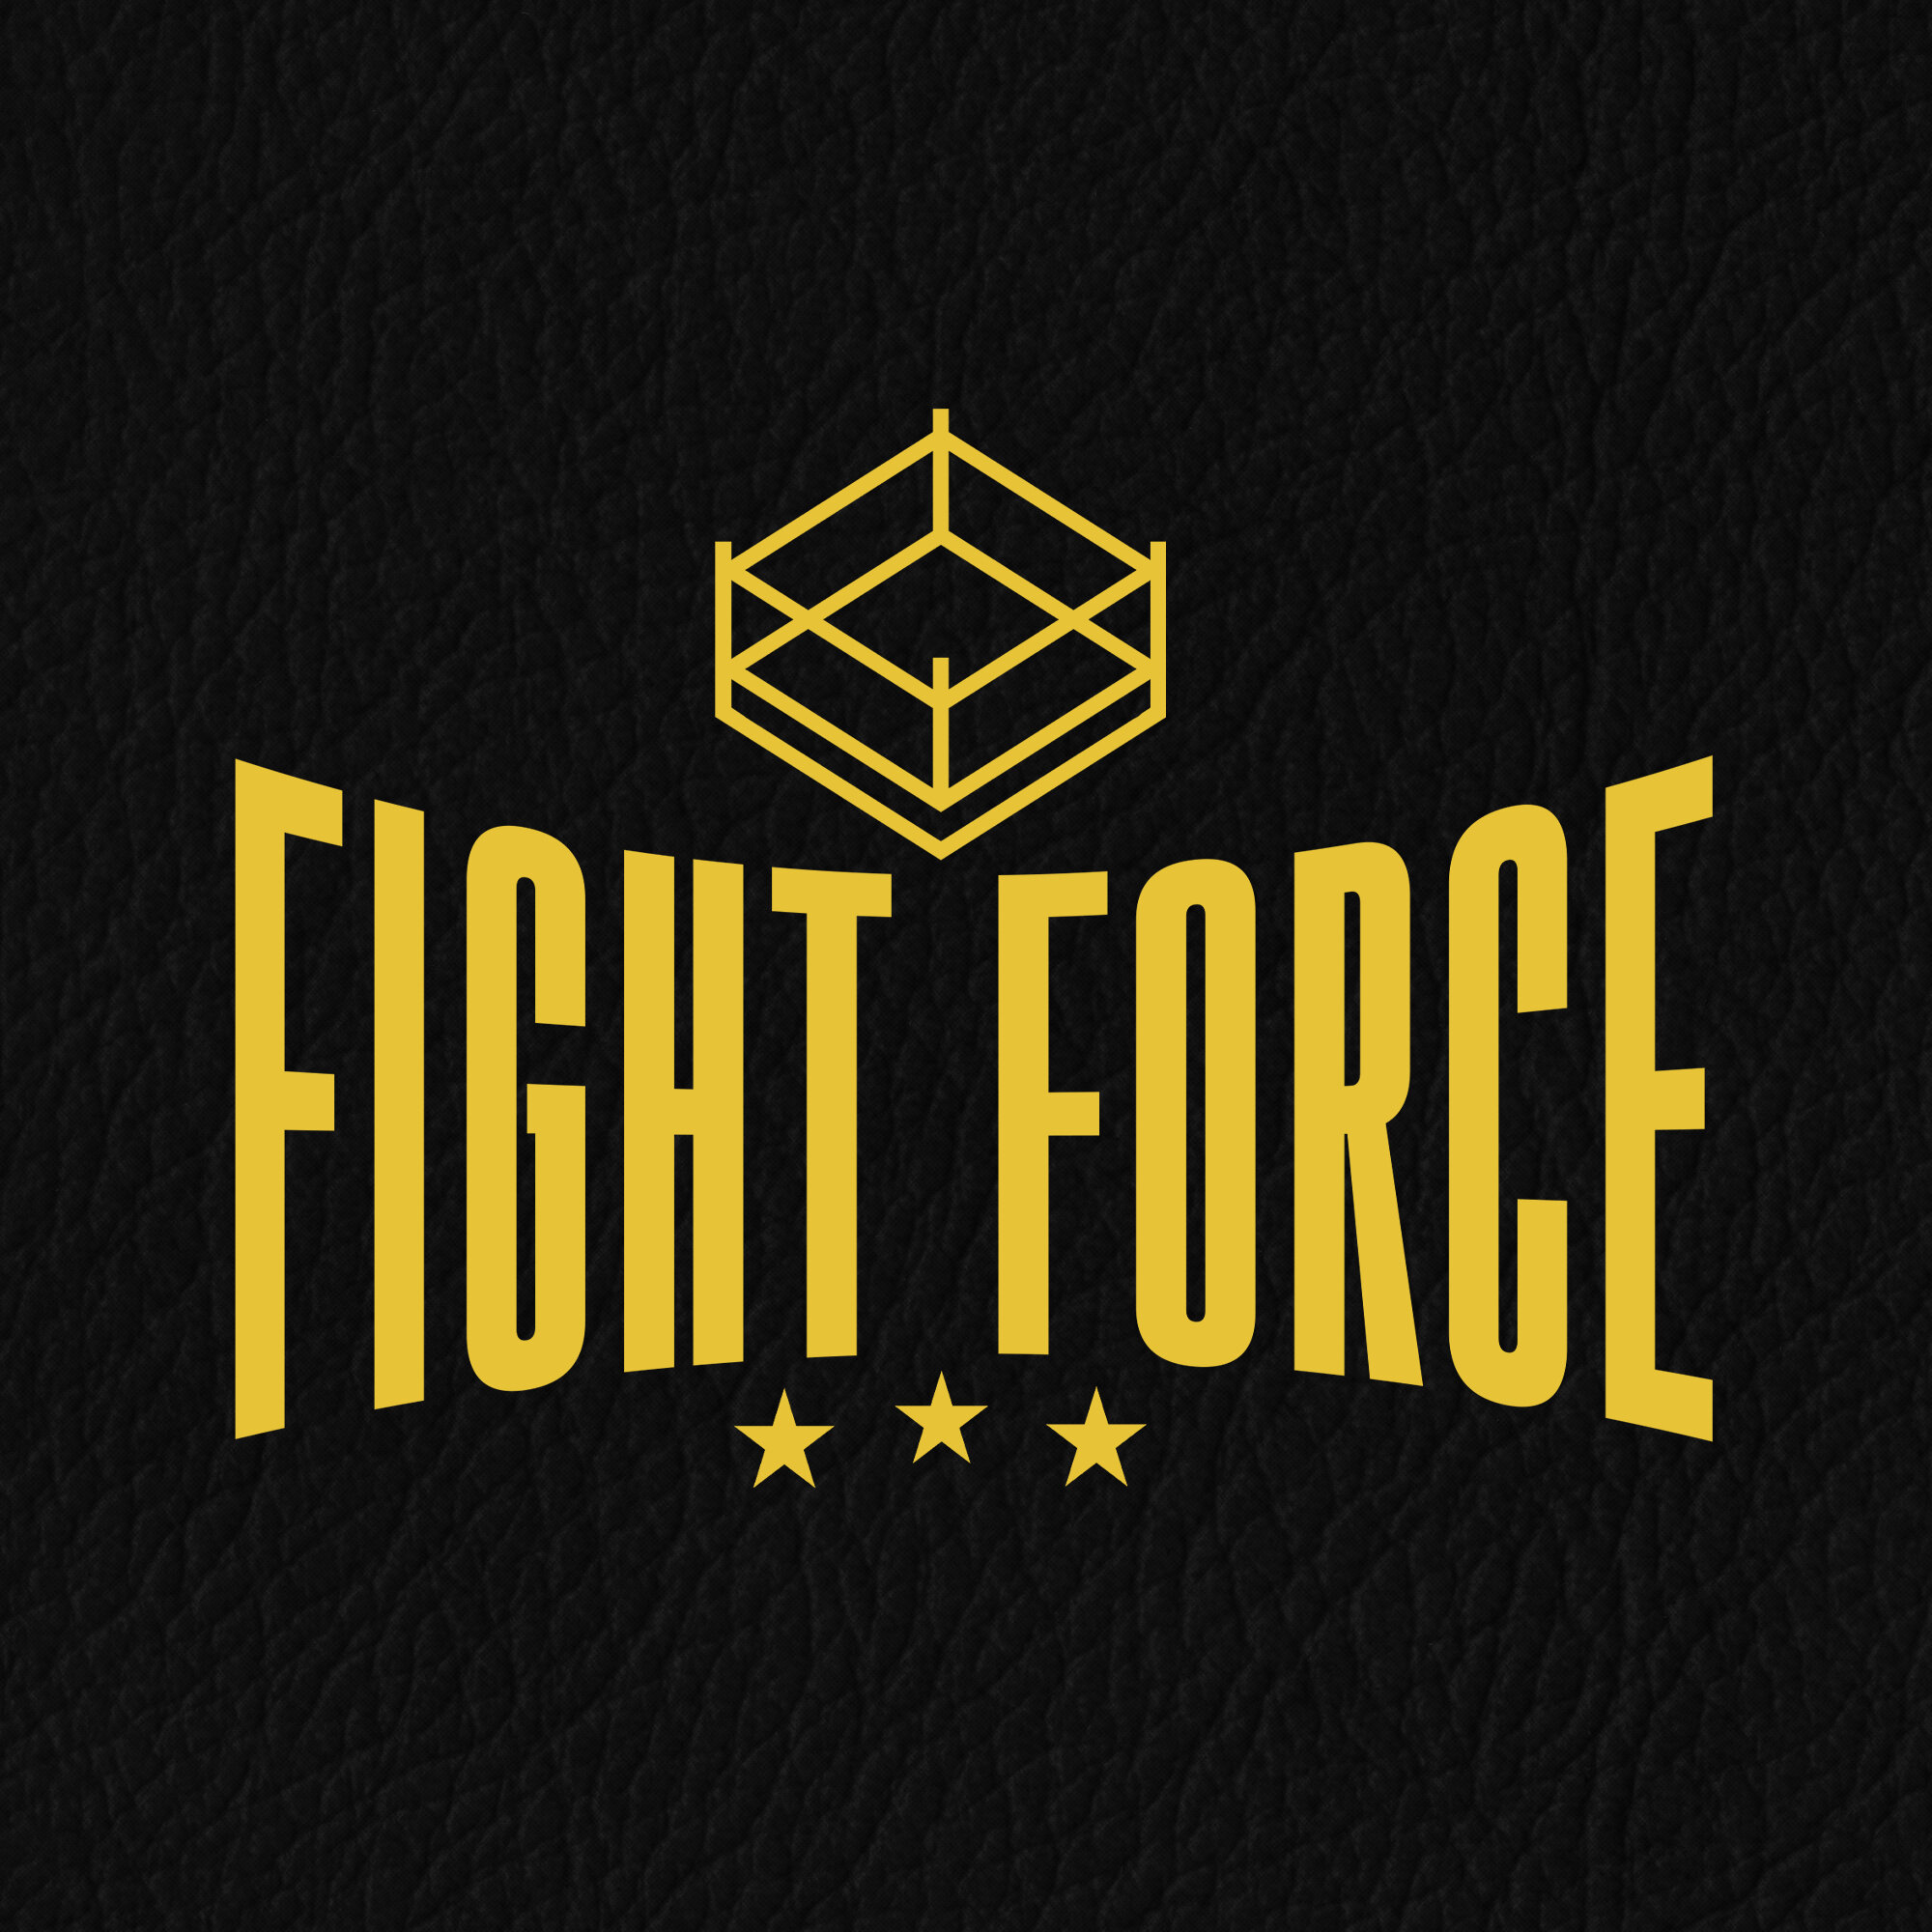 fight force.jpg